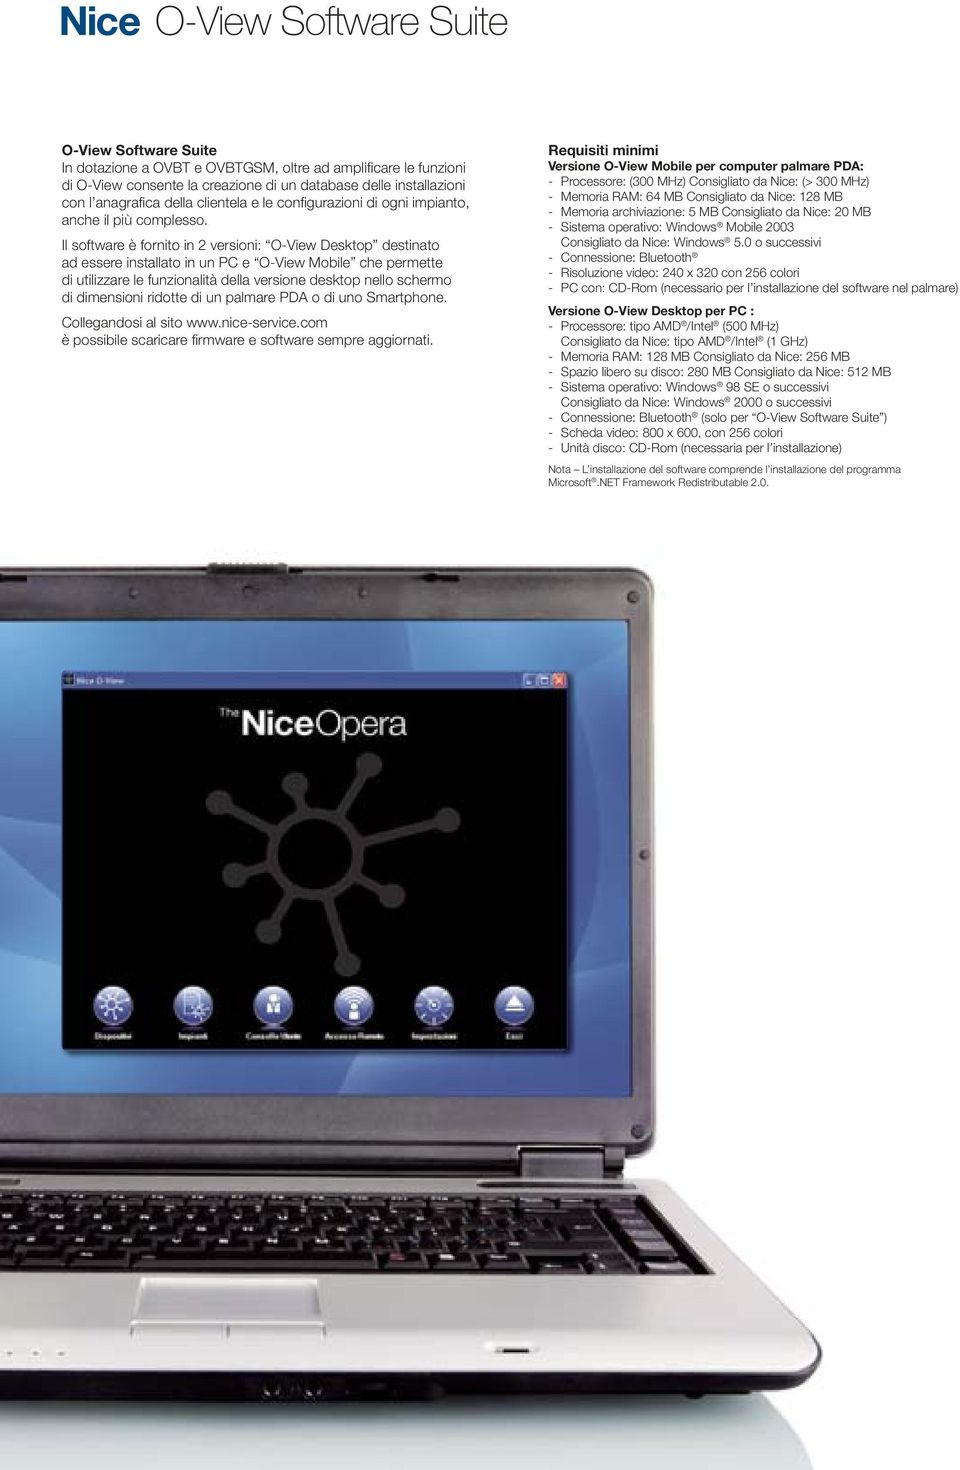 Il software è fornito in 2 versioni: O-View Desktop destinato ad essere installato in un PC e O-View Mobile che permette di utilizzare le funzionalità della versione desktop nello schermo di